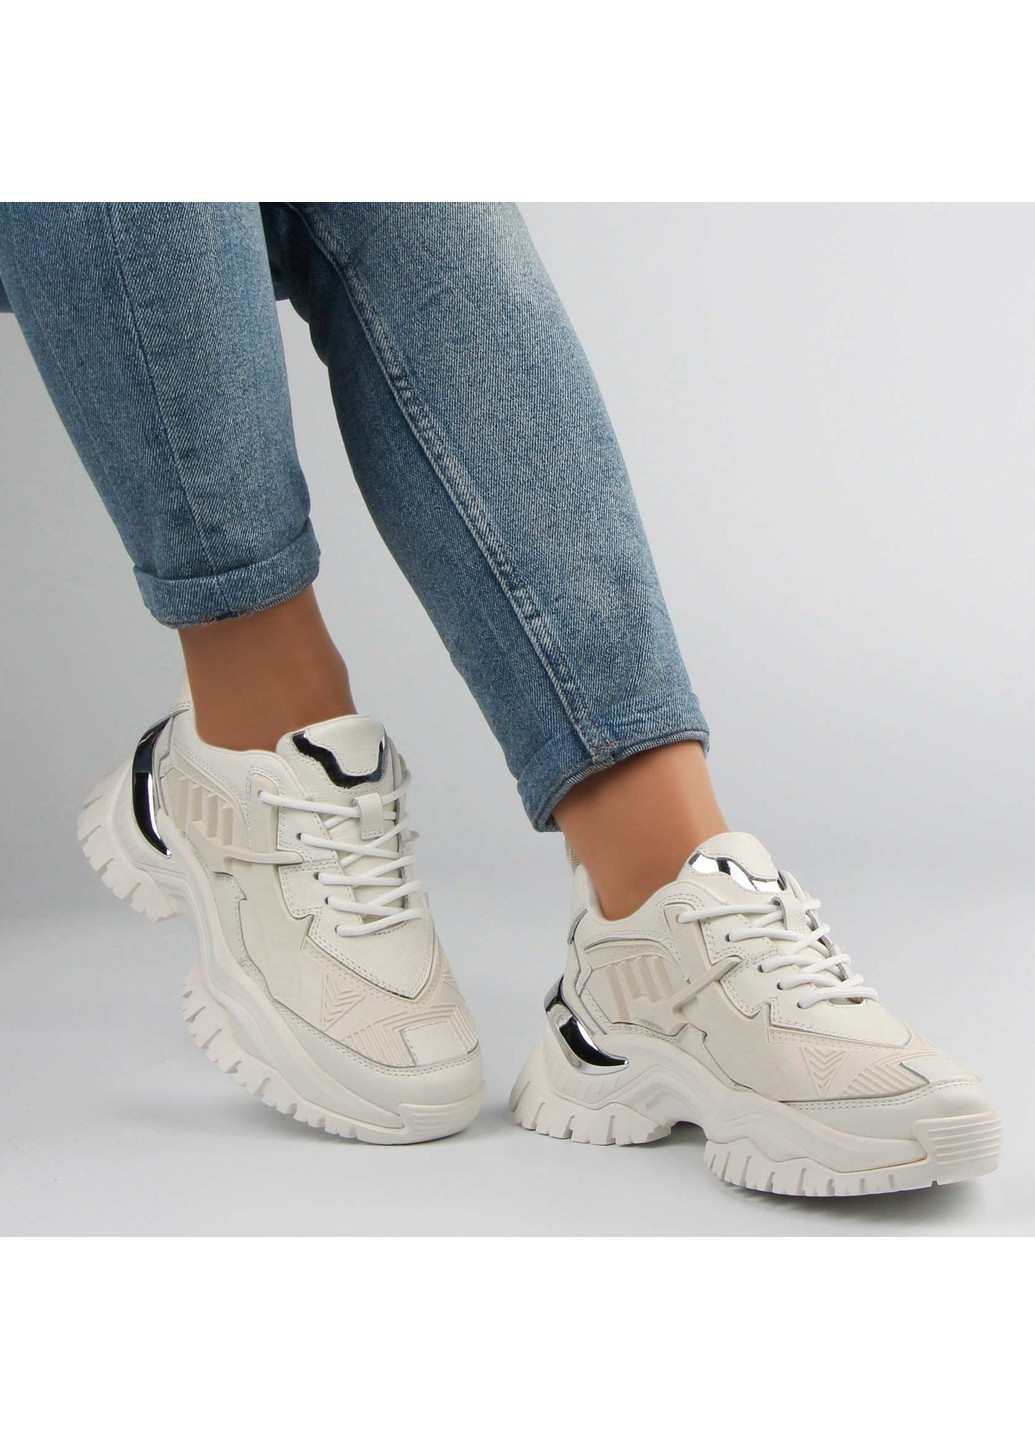 Белые демисезонные женские кроссовки 197250 Buts